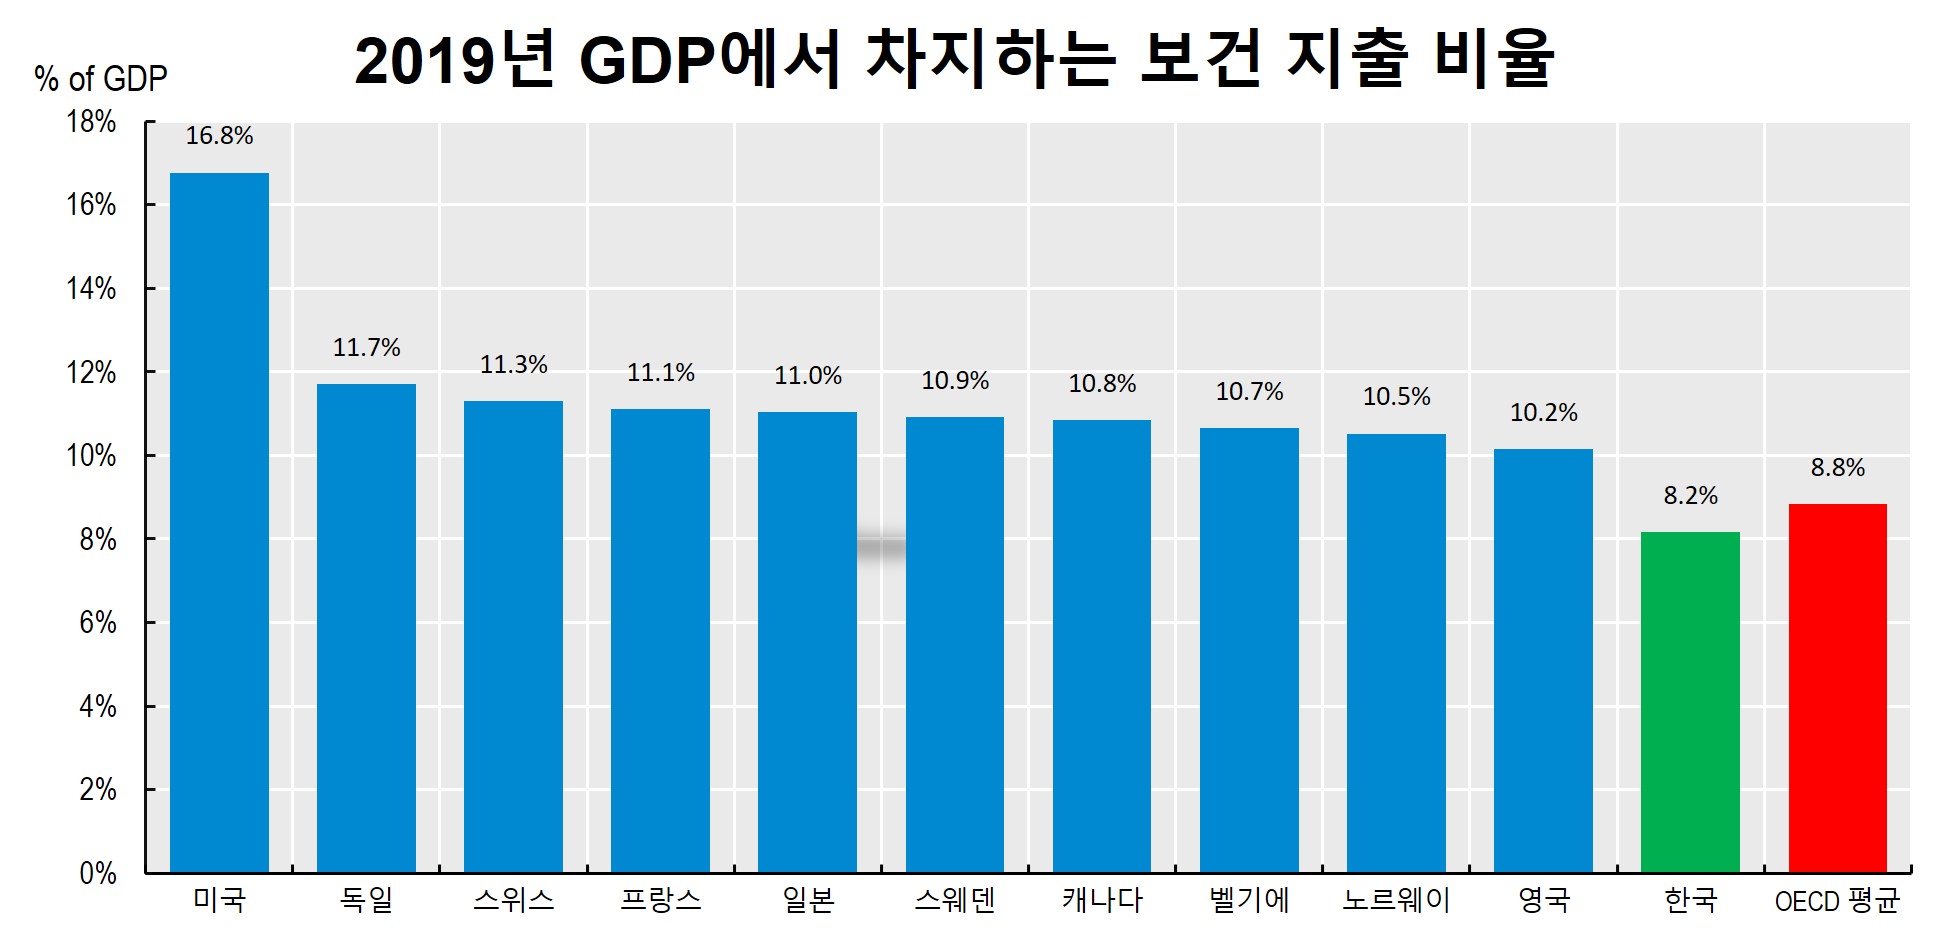 이미지: 2019년 GDP에서 차지하는 보건 지출 비율